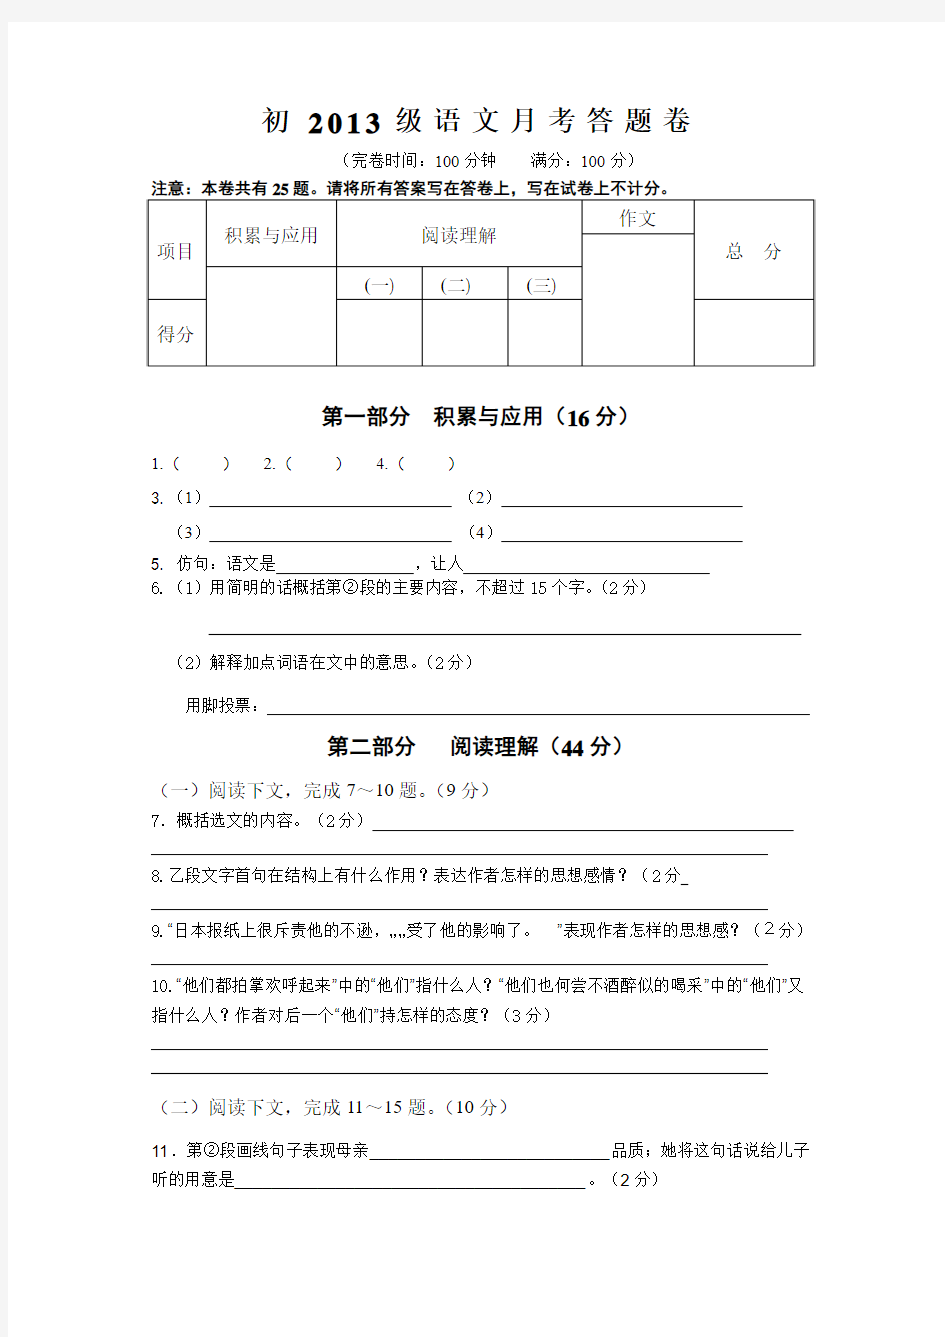 初中语文答题卷模板